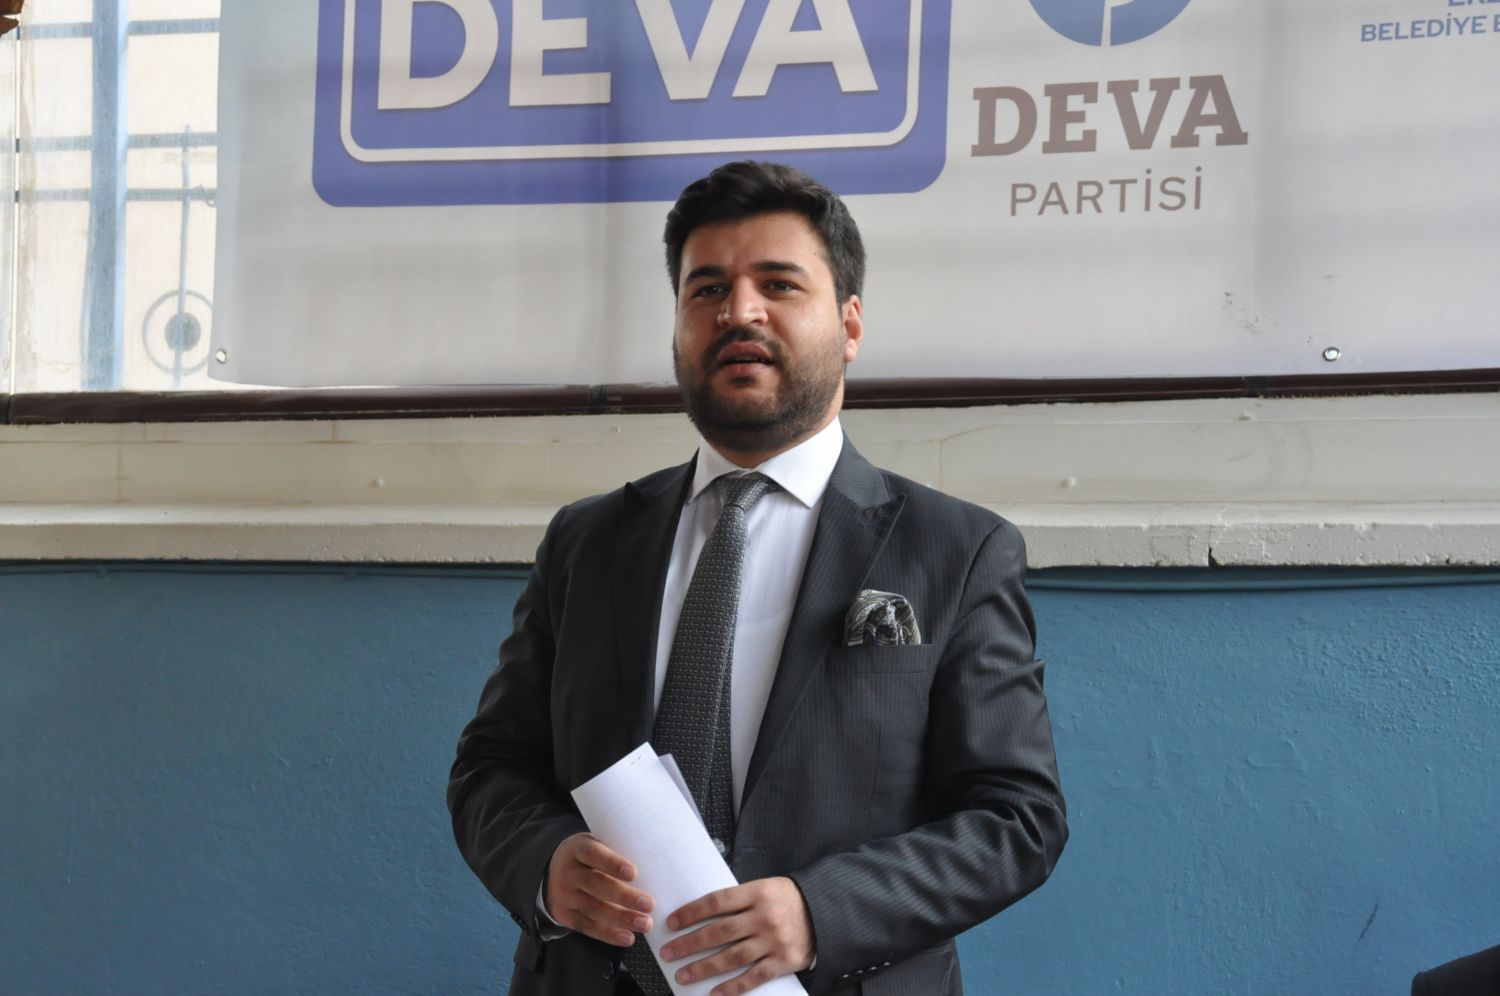 DEVA Partisi Erzincan Belediye Başkanı Adayı Av. Mehmet Sait Başaran